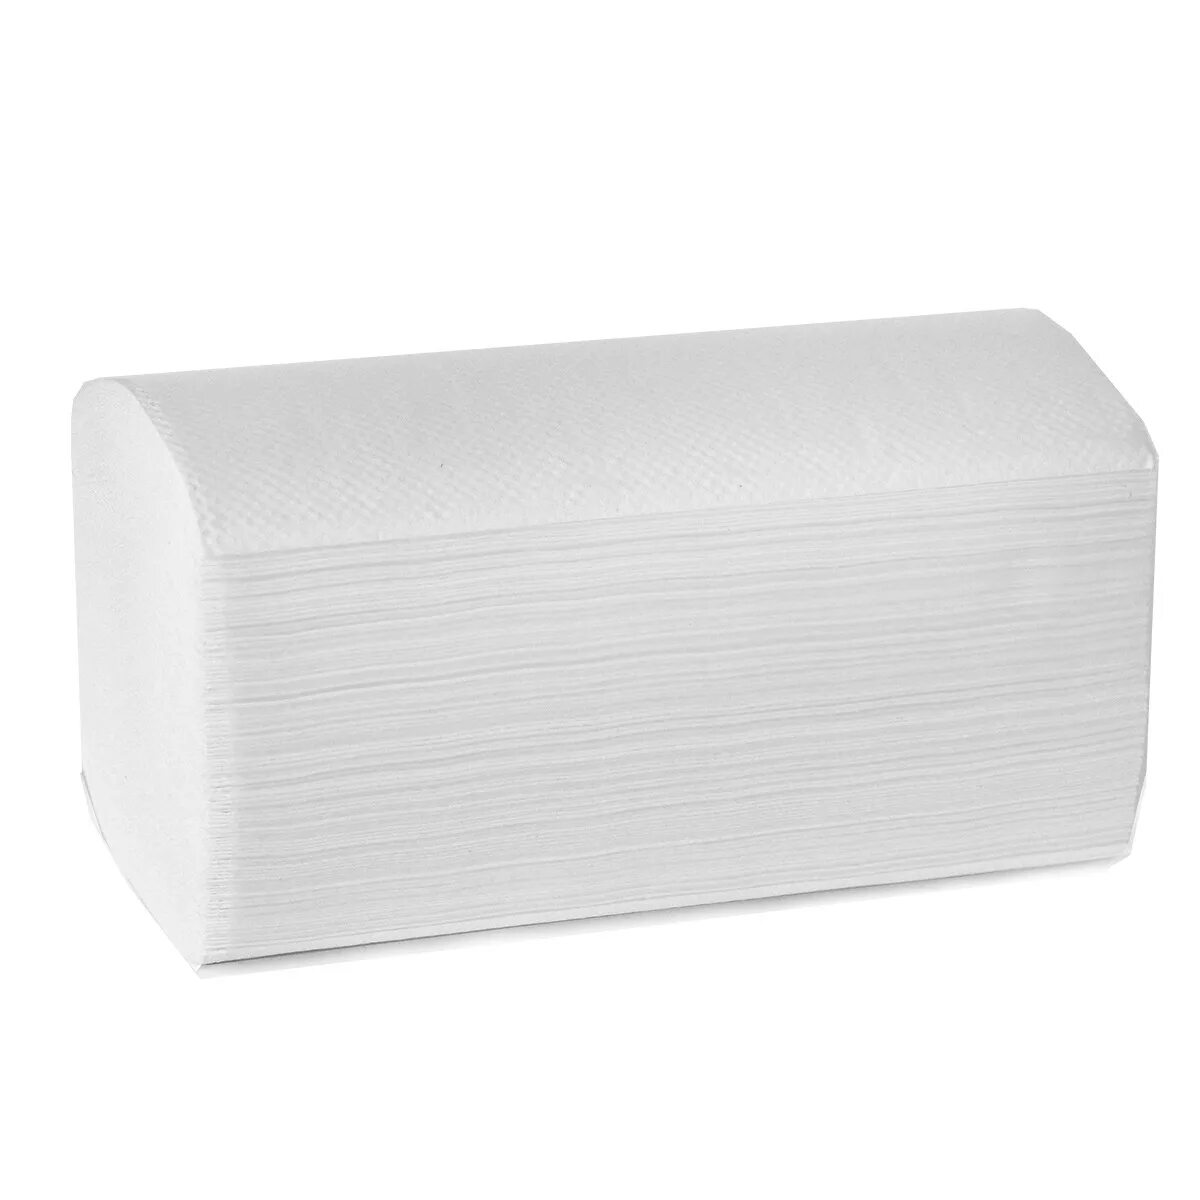 Полотенце бумажное z-укл. Белое 1-сл. 200 Шт. А. Z22-200 Veiro. Полотенца бумажные Veiro v22-200. Полотенце бумажное листовое 2-сл 200 лист/уп 230х230 мм v-сложения белое.